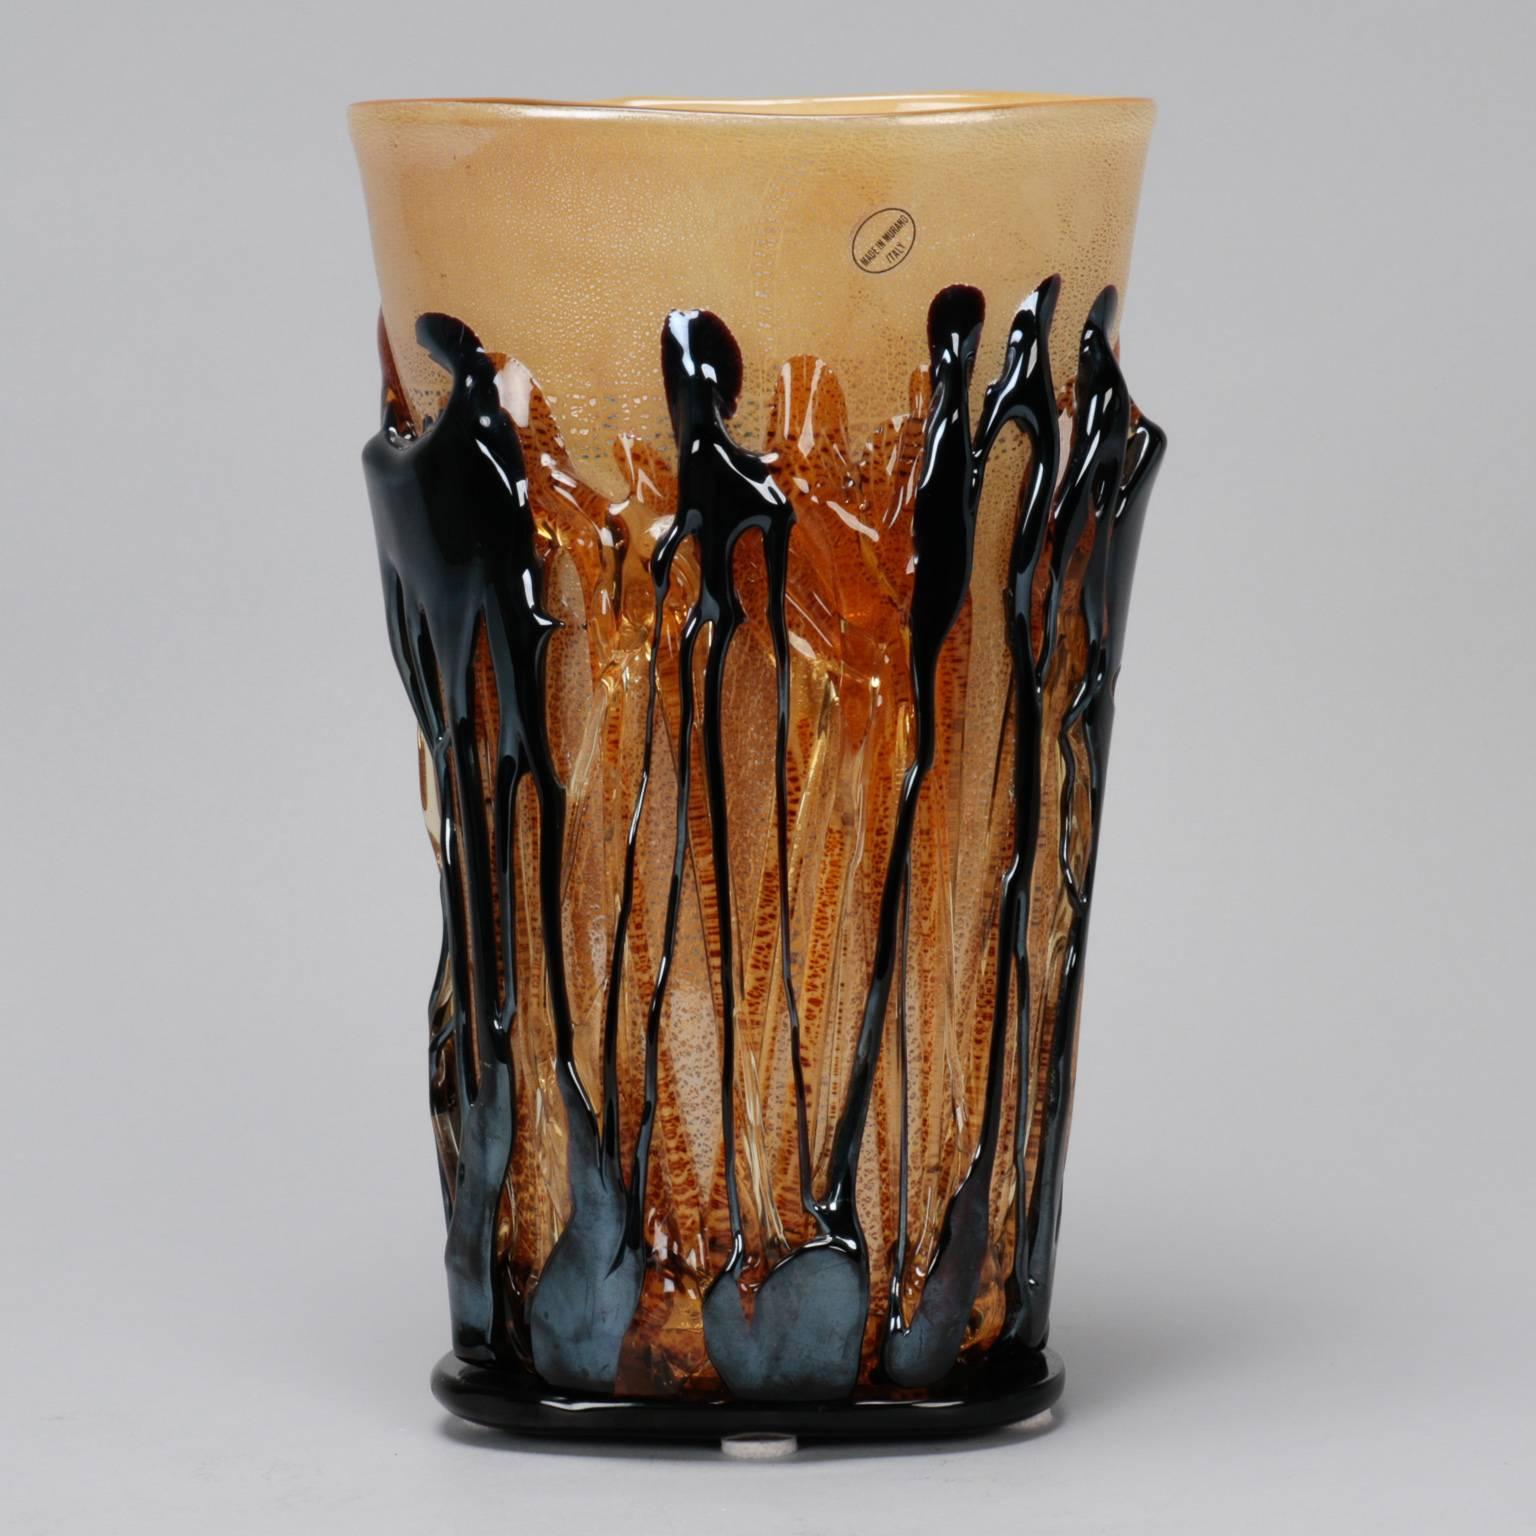 Vase en verre de Murano de couleur crème et taupe doré, circa 1990, de forme subtilement évasée et d'une hauteur d'un peu plus de 12 pouces. La base et le corps du vase sont entourés de cordes de verre noir et ambré appliquées. Label original made